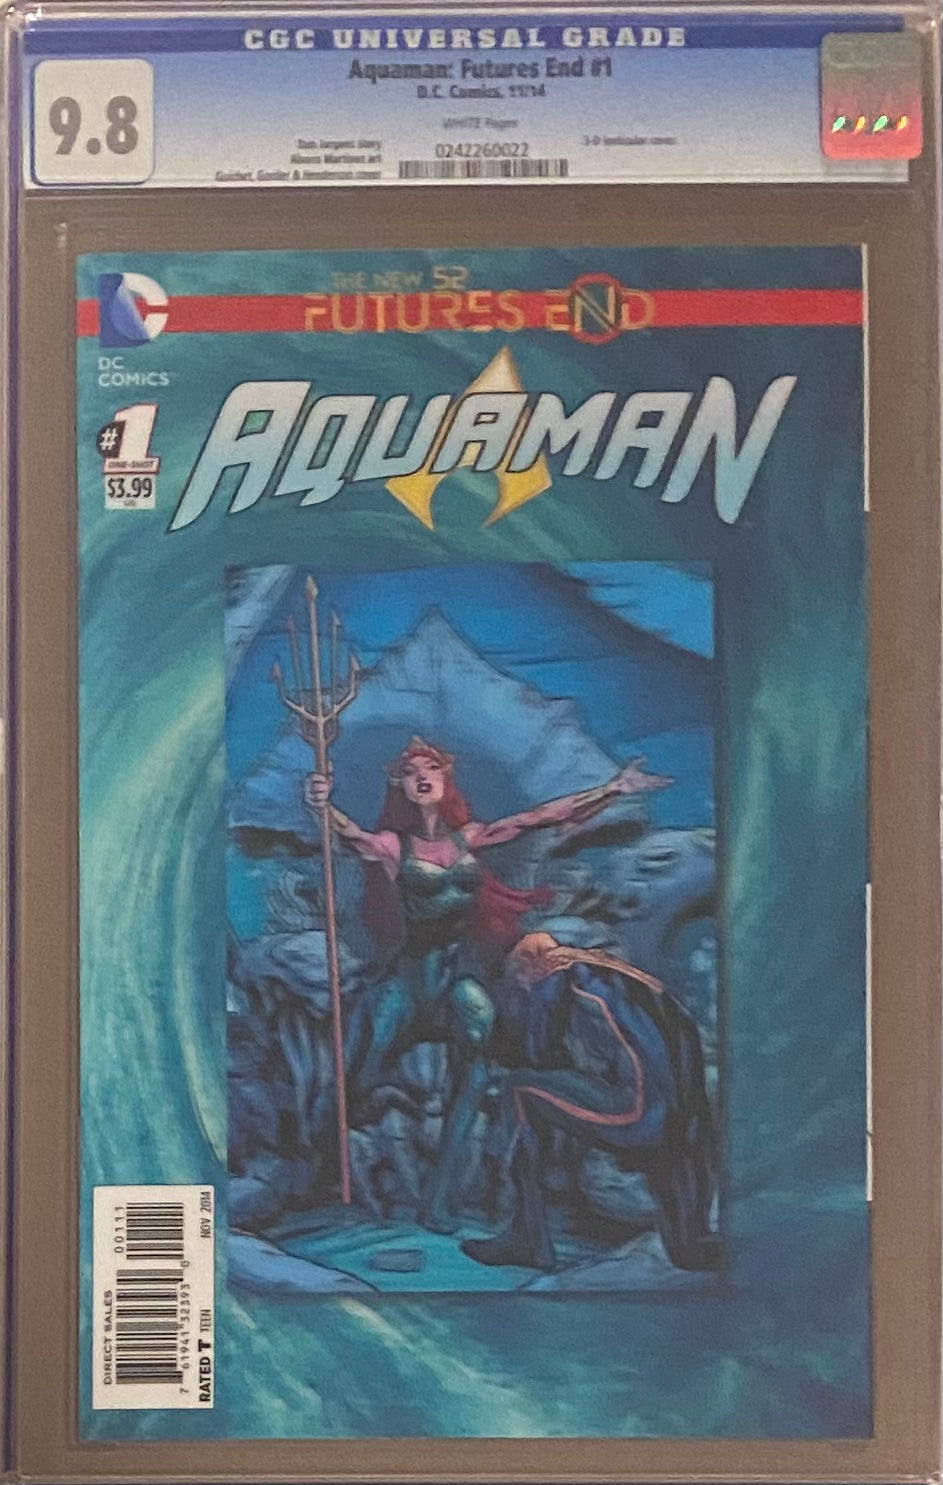 Aquaman: Future's End #1 CGC 9.8